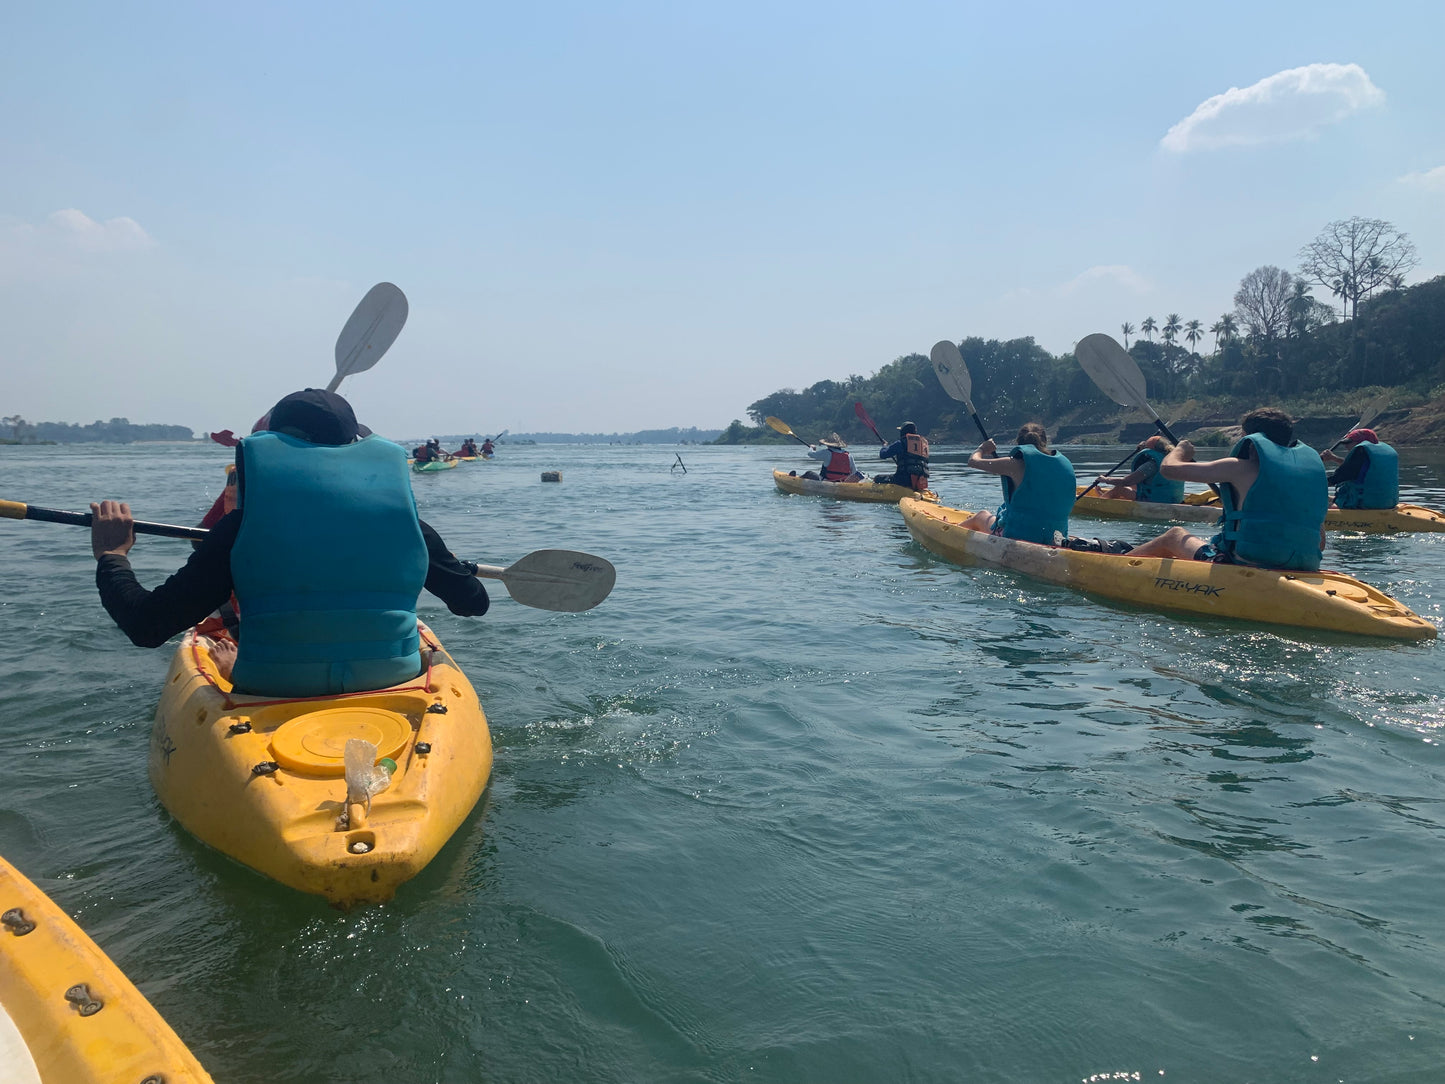 A7E: (5 DÍAS) Laos desatado: la aventura definitiva a través de Pakse Loops, paseos en kayak por las 4000 islas y exploración cultural inmersiva